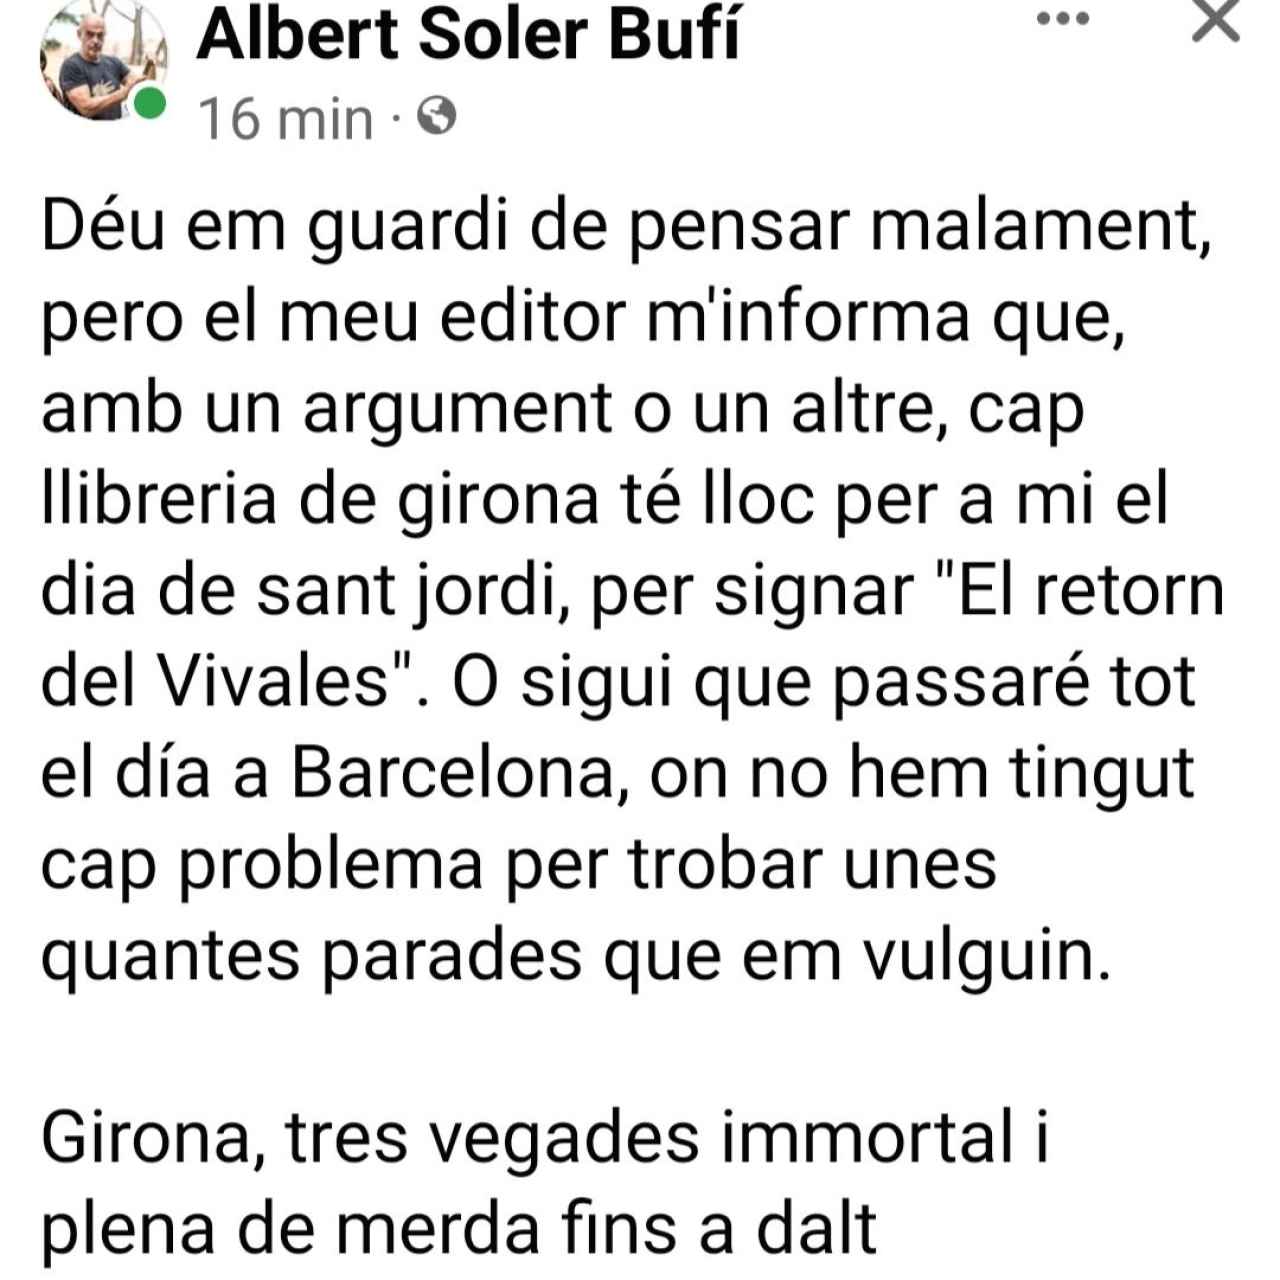 Albert Soler, explicando que las librerías de Girona no cuentan con él para firmar libros en Sant Jordi